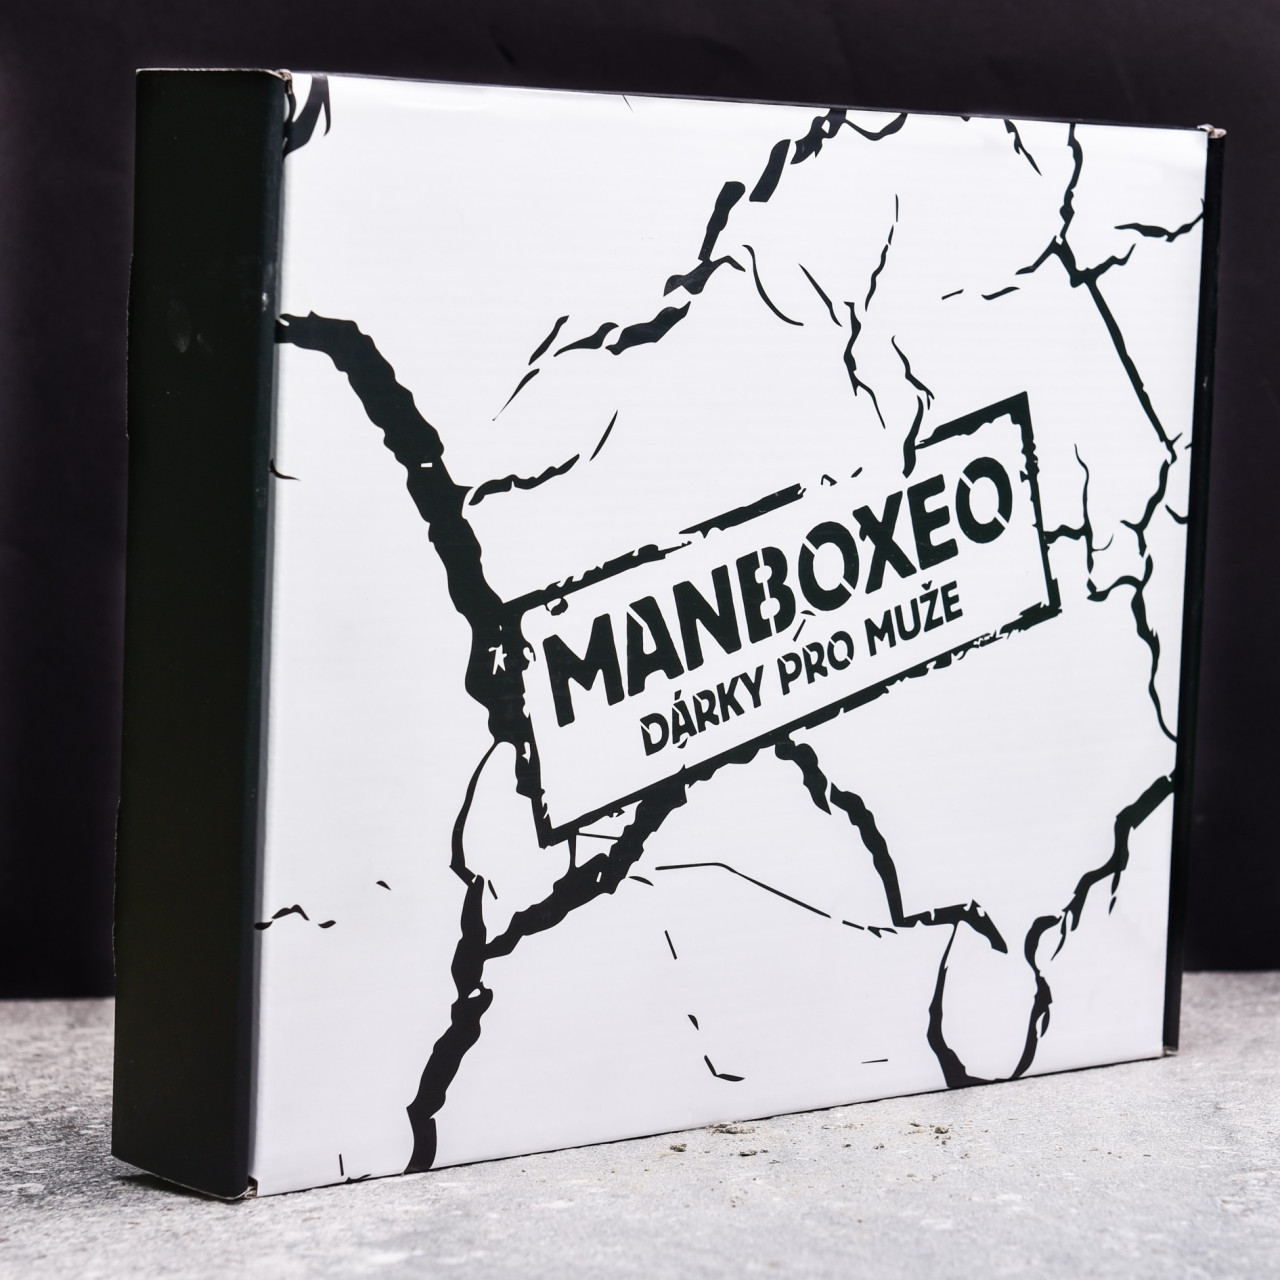 Dárková krabice Manboxeo - dárek pro muže k výročí.jpg